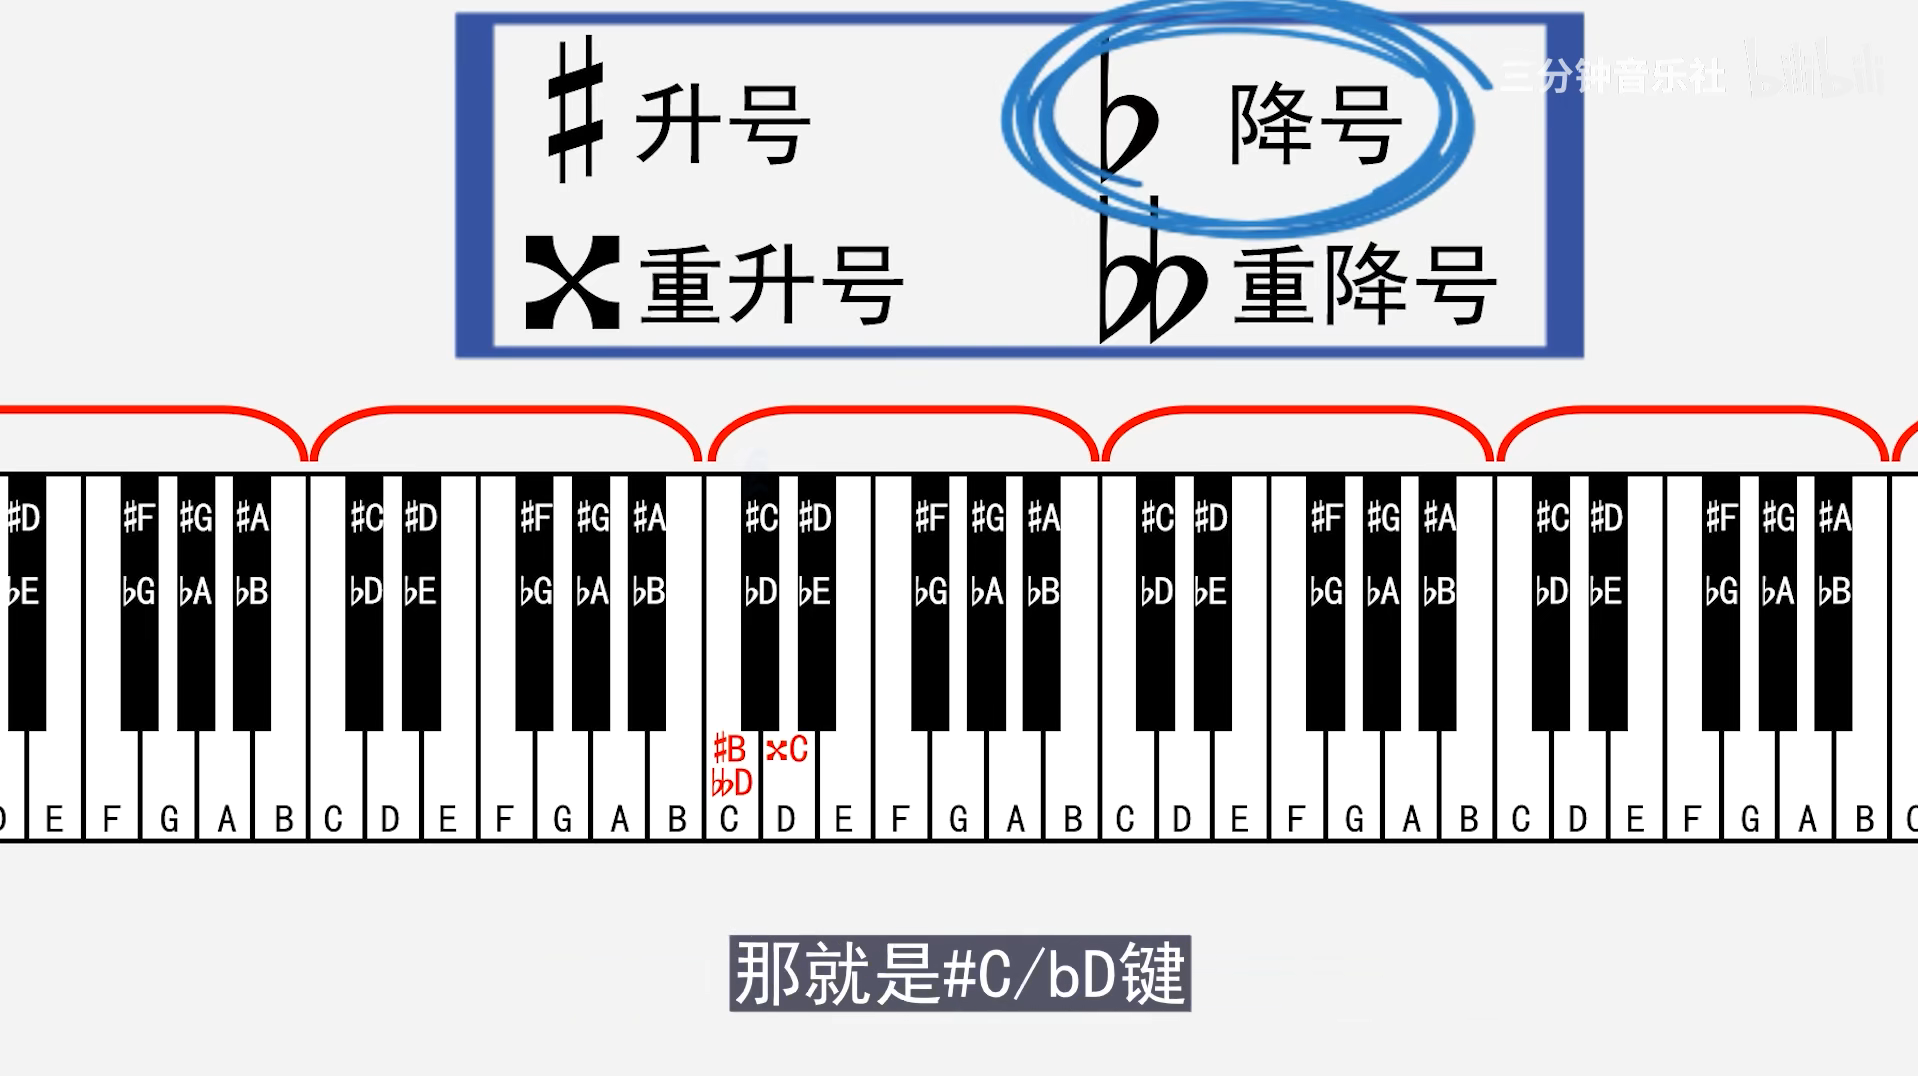 任何乐器都是相邻的升c=降d倒叙记忆法钢琴有9个组,一共88个按键,7*12